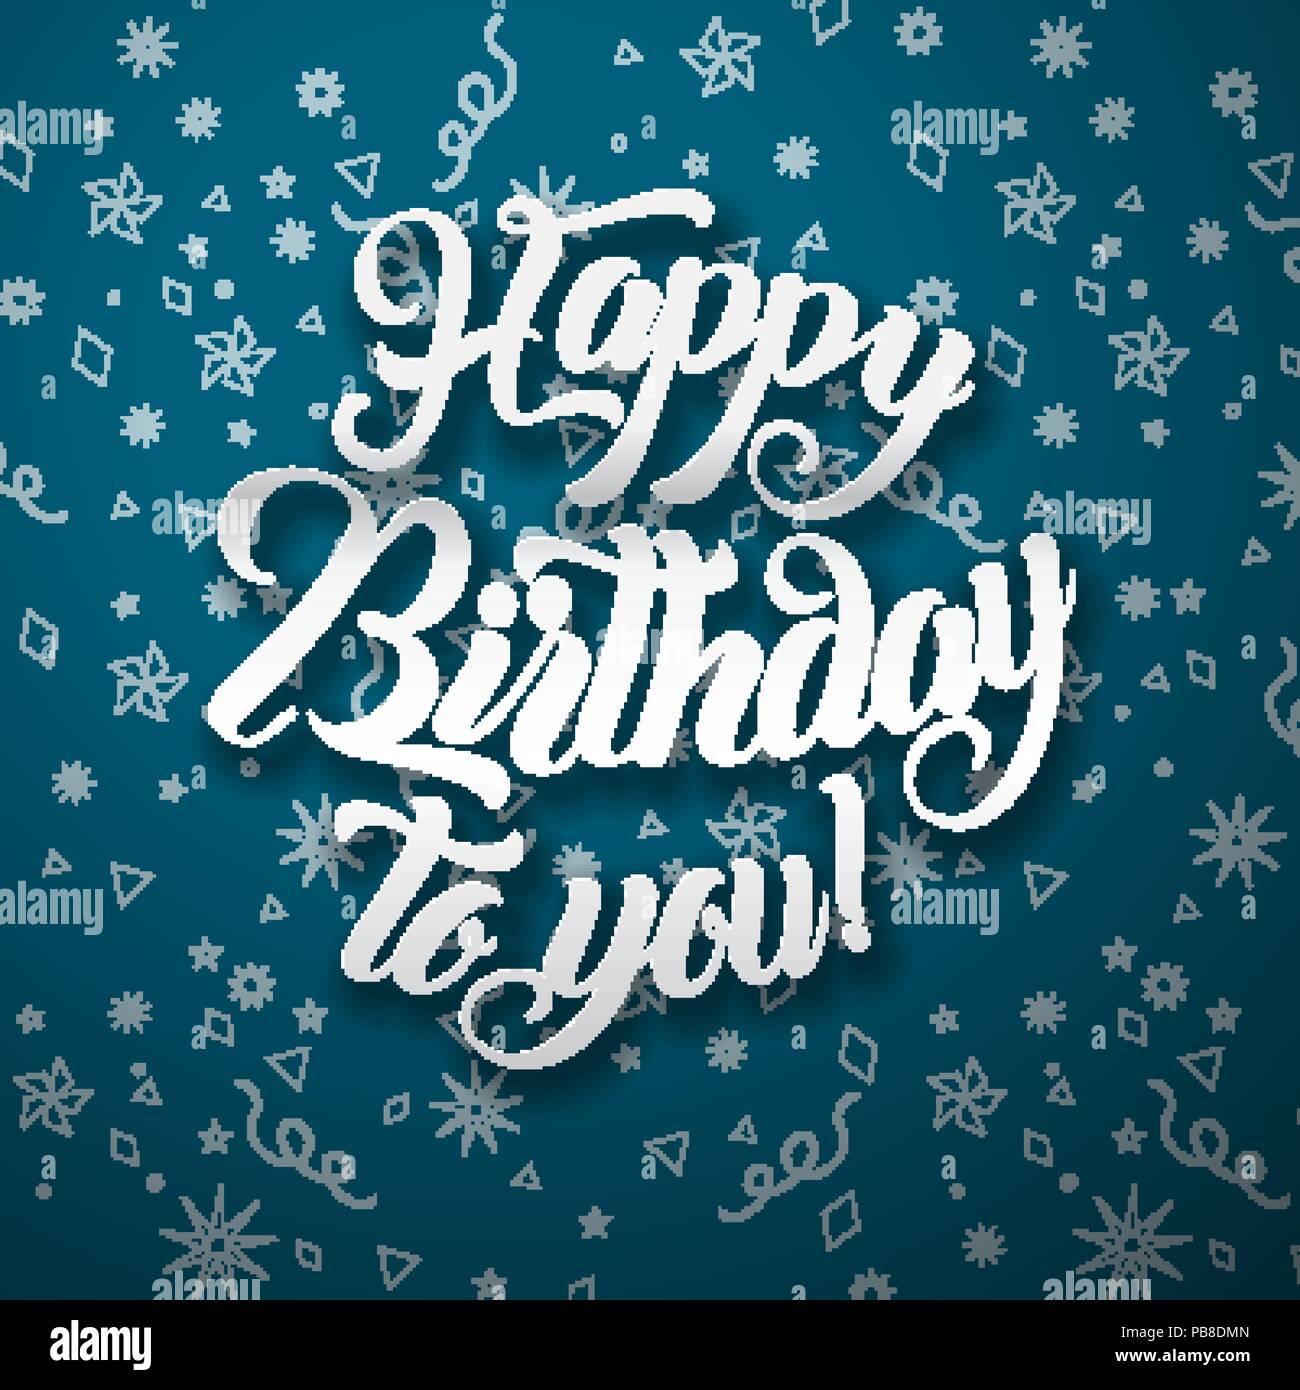 Alles Gute Zum Geburtstag Fur Sie Text Vektor Illustration Schriftzug Geburtstag Grusskarten Design Stock Vektorgrafik Alamy